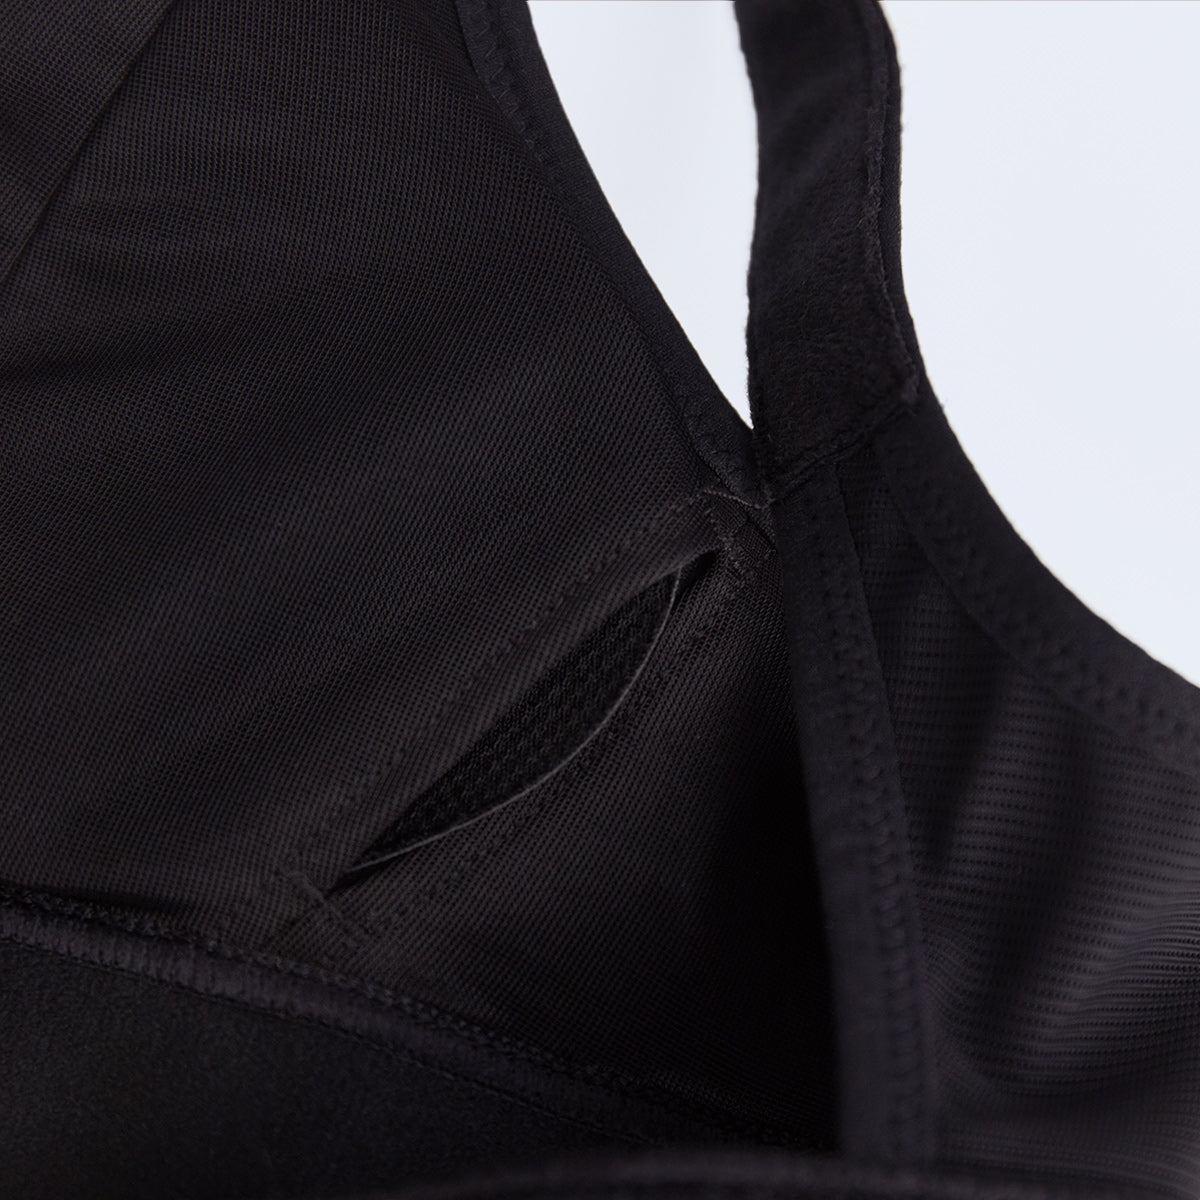 Ultimate sports bra removable pads | SHEFIT